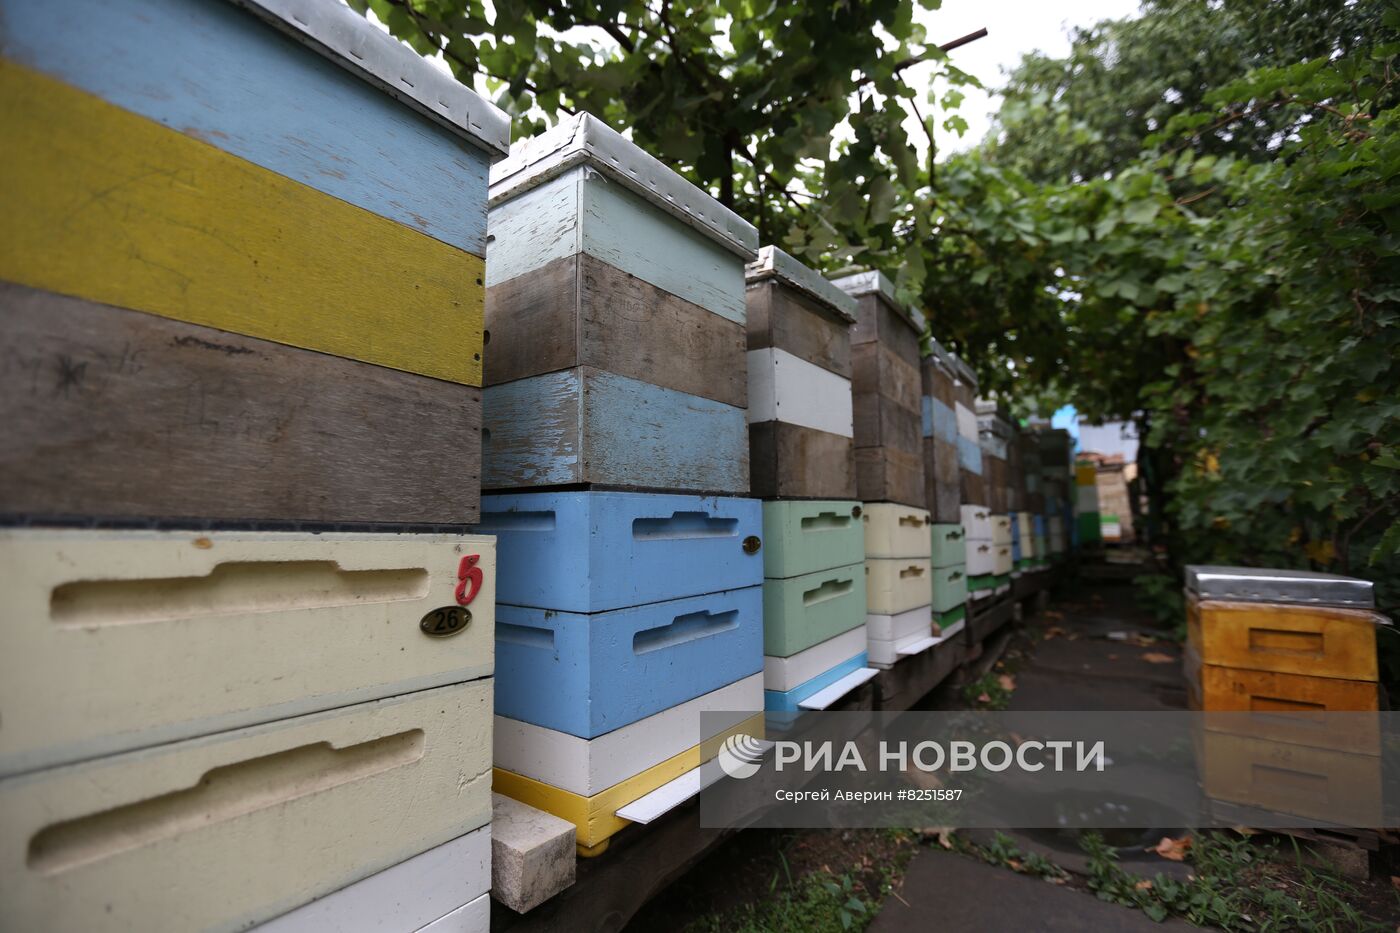 Производство меда в Донецке